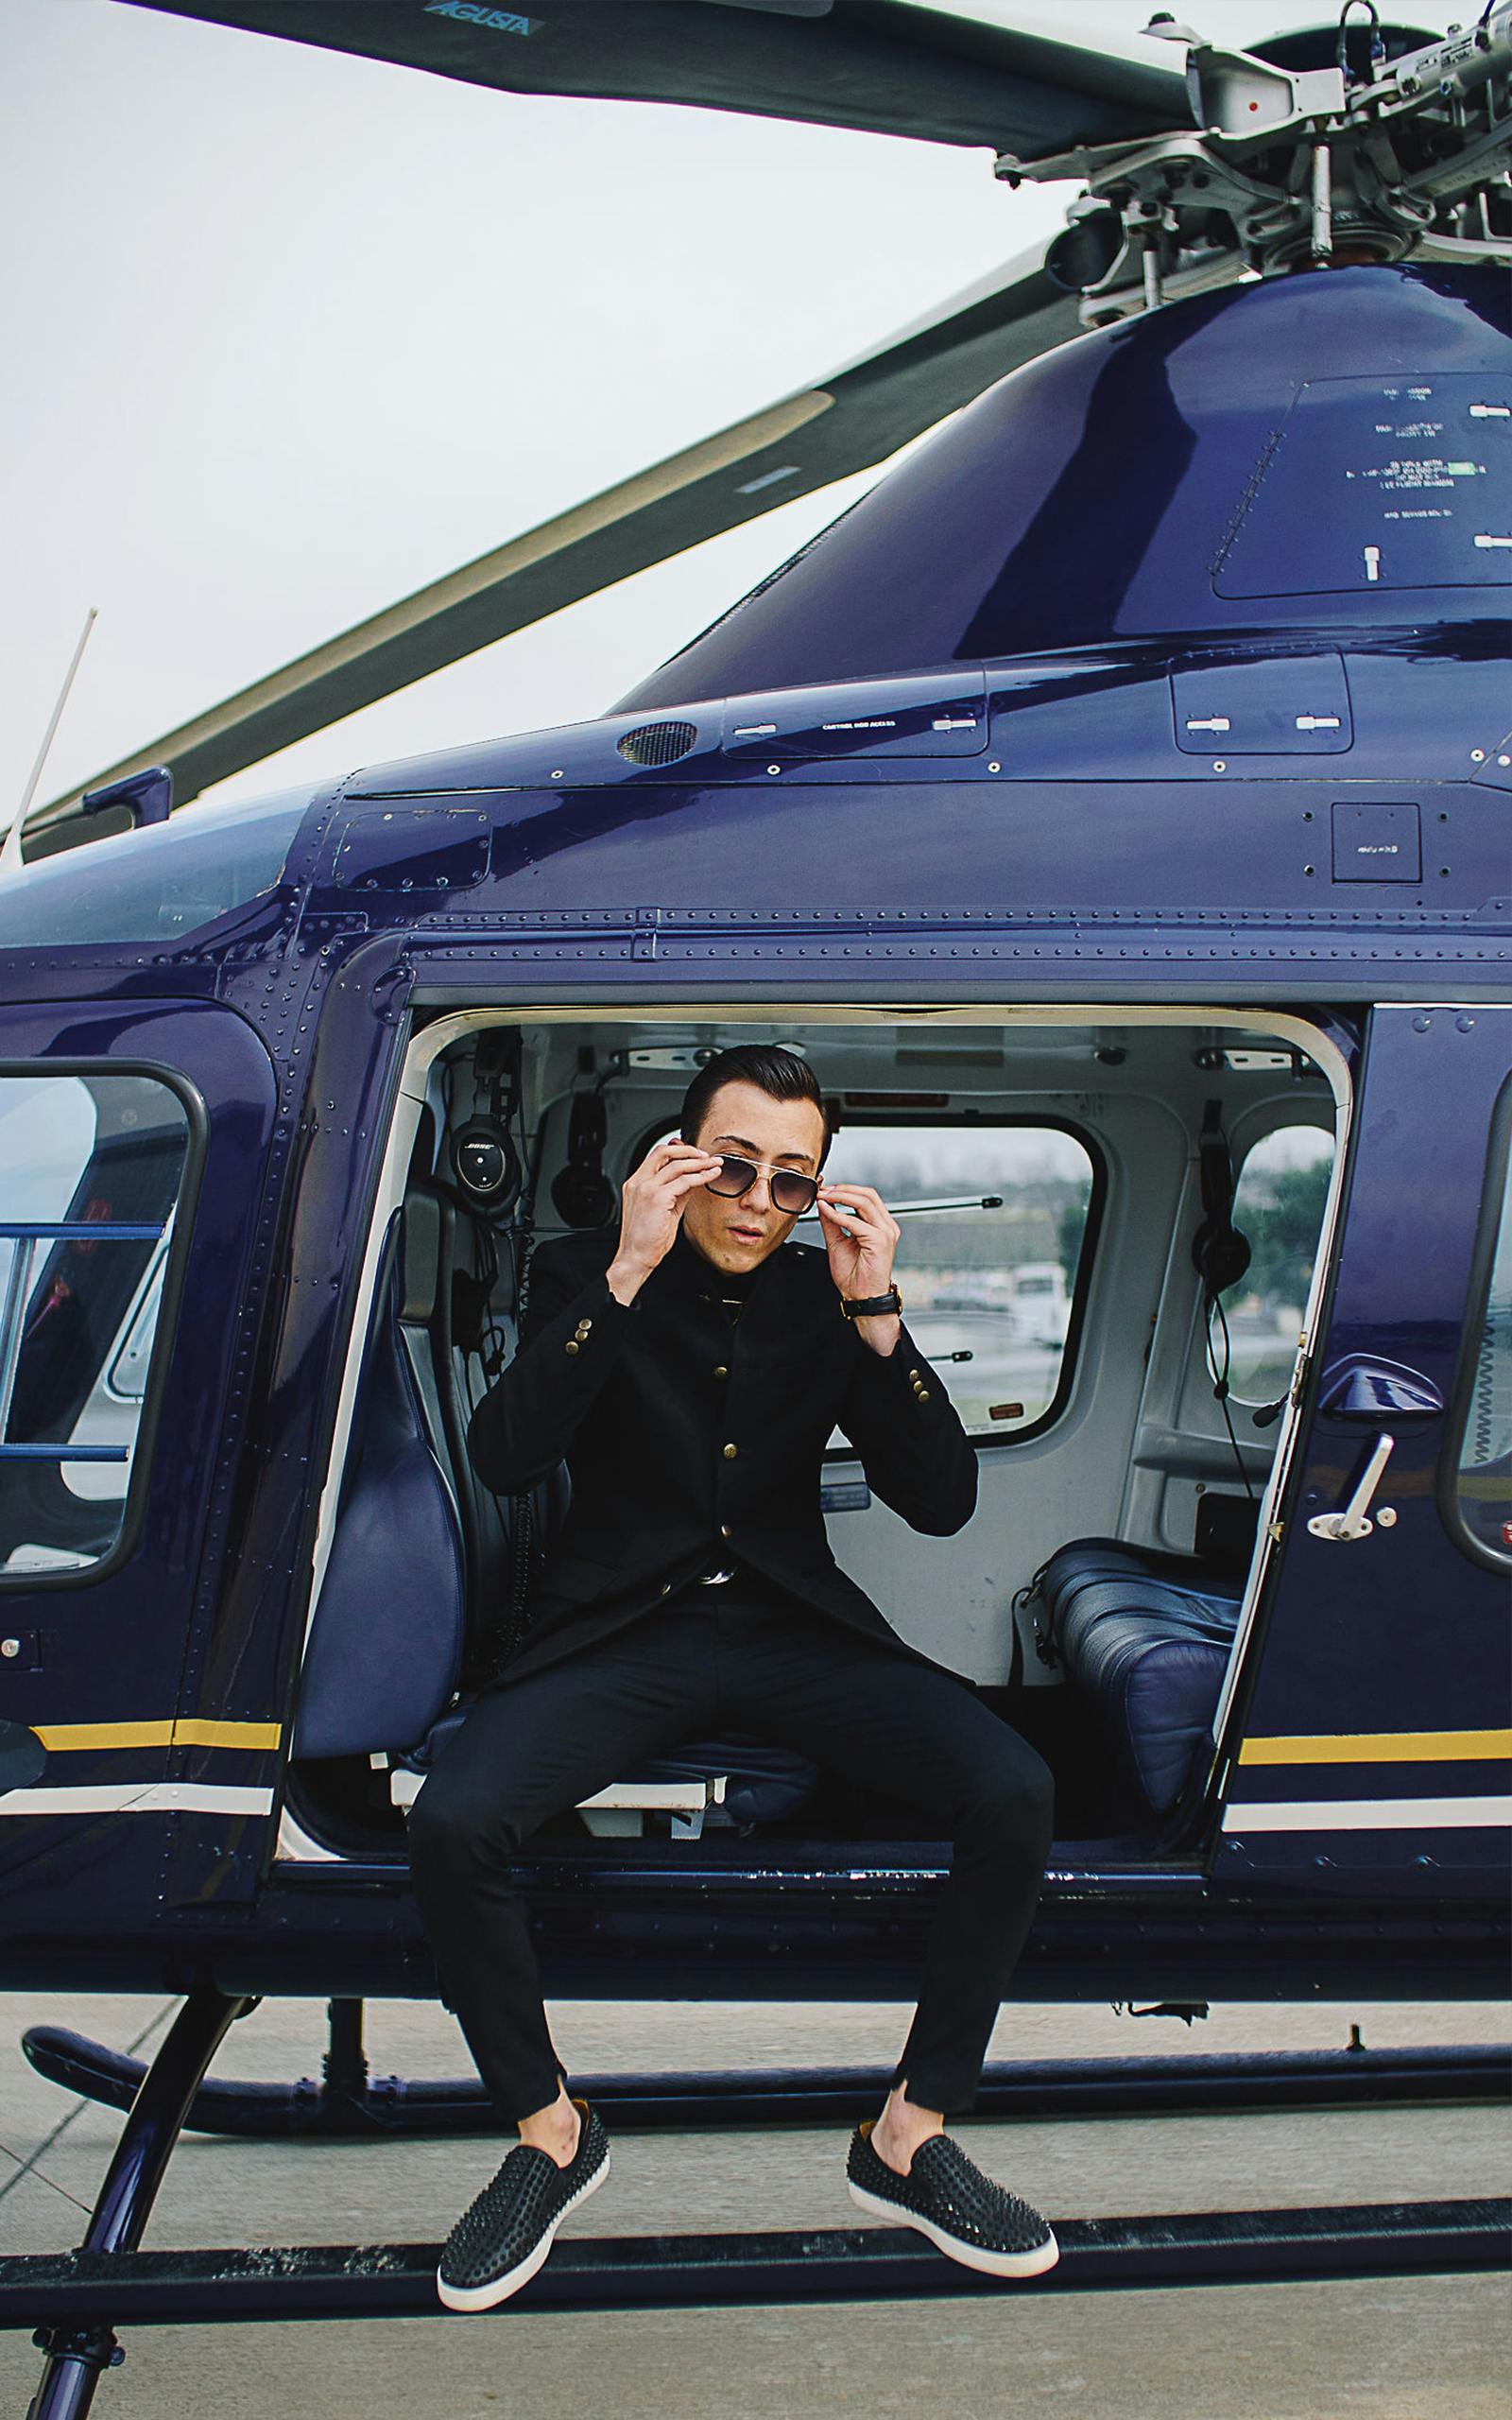 Ein reicher junger Mann in einem Hubschrauber | Quelle: Pexels